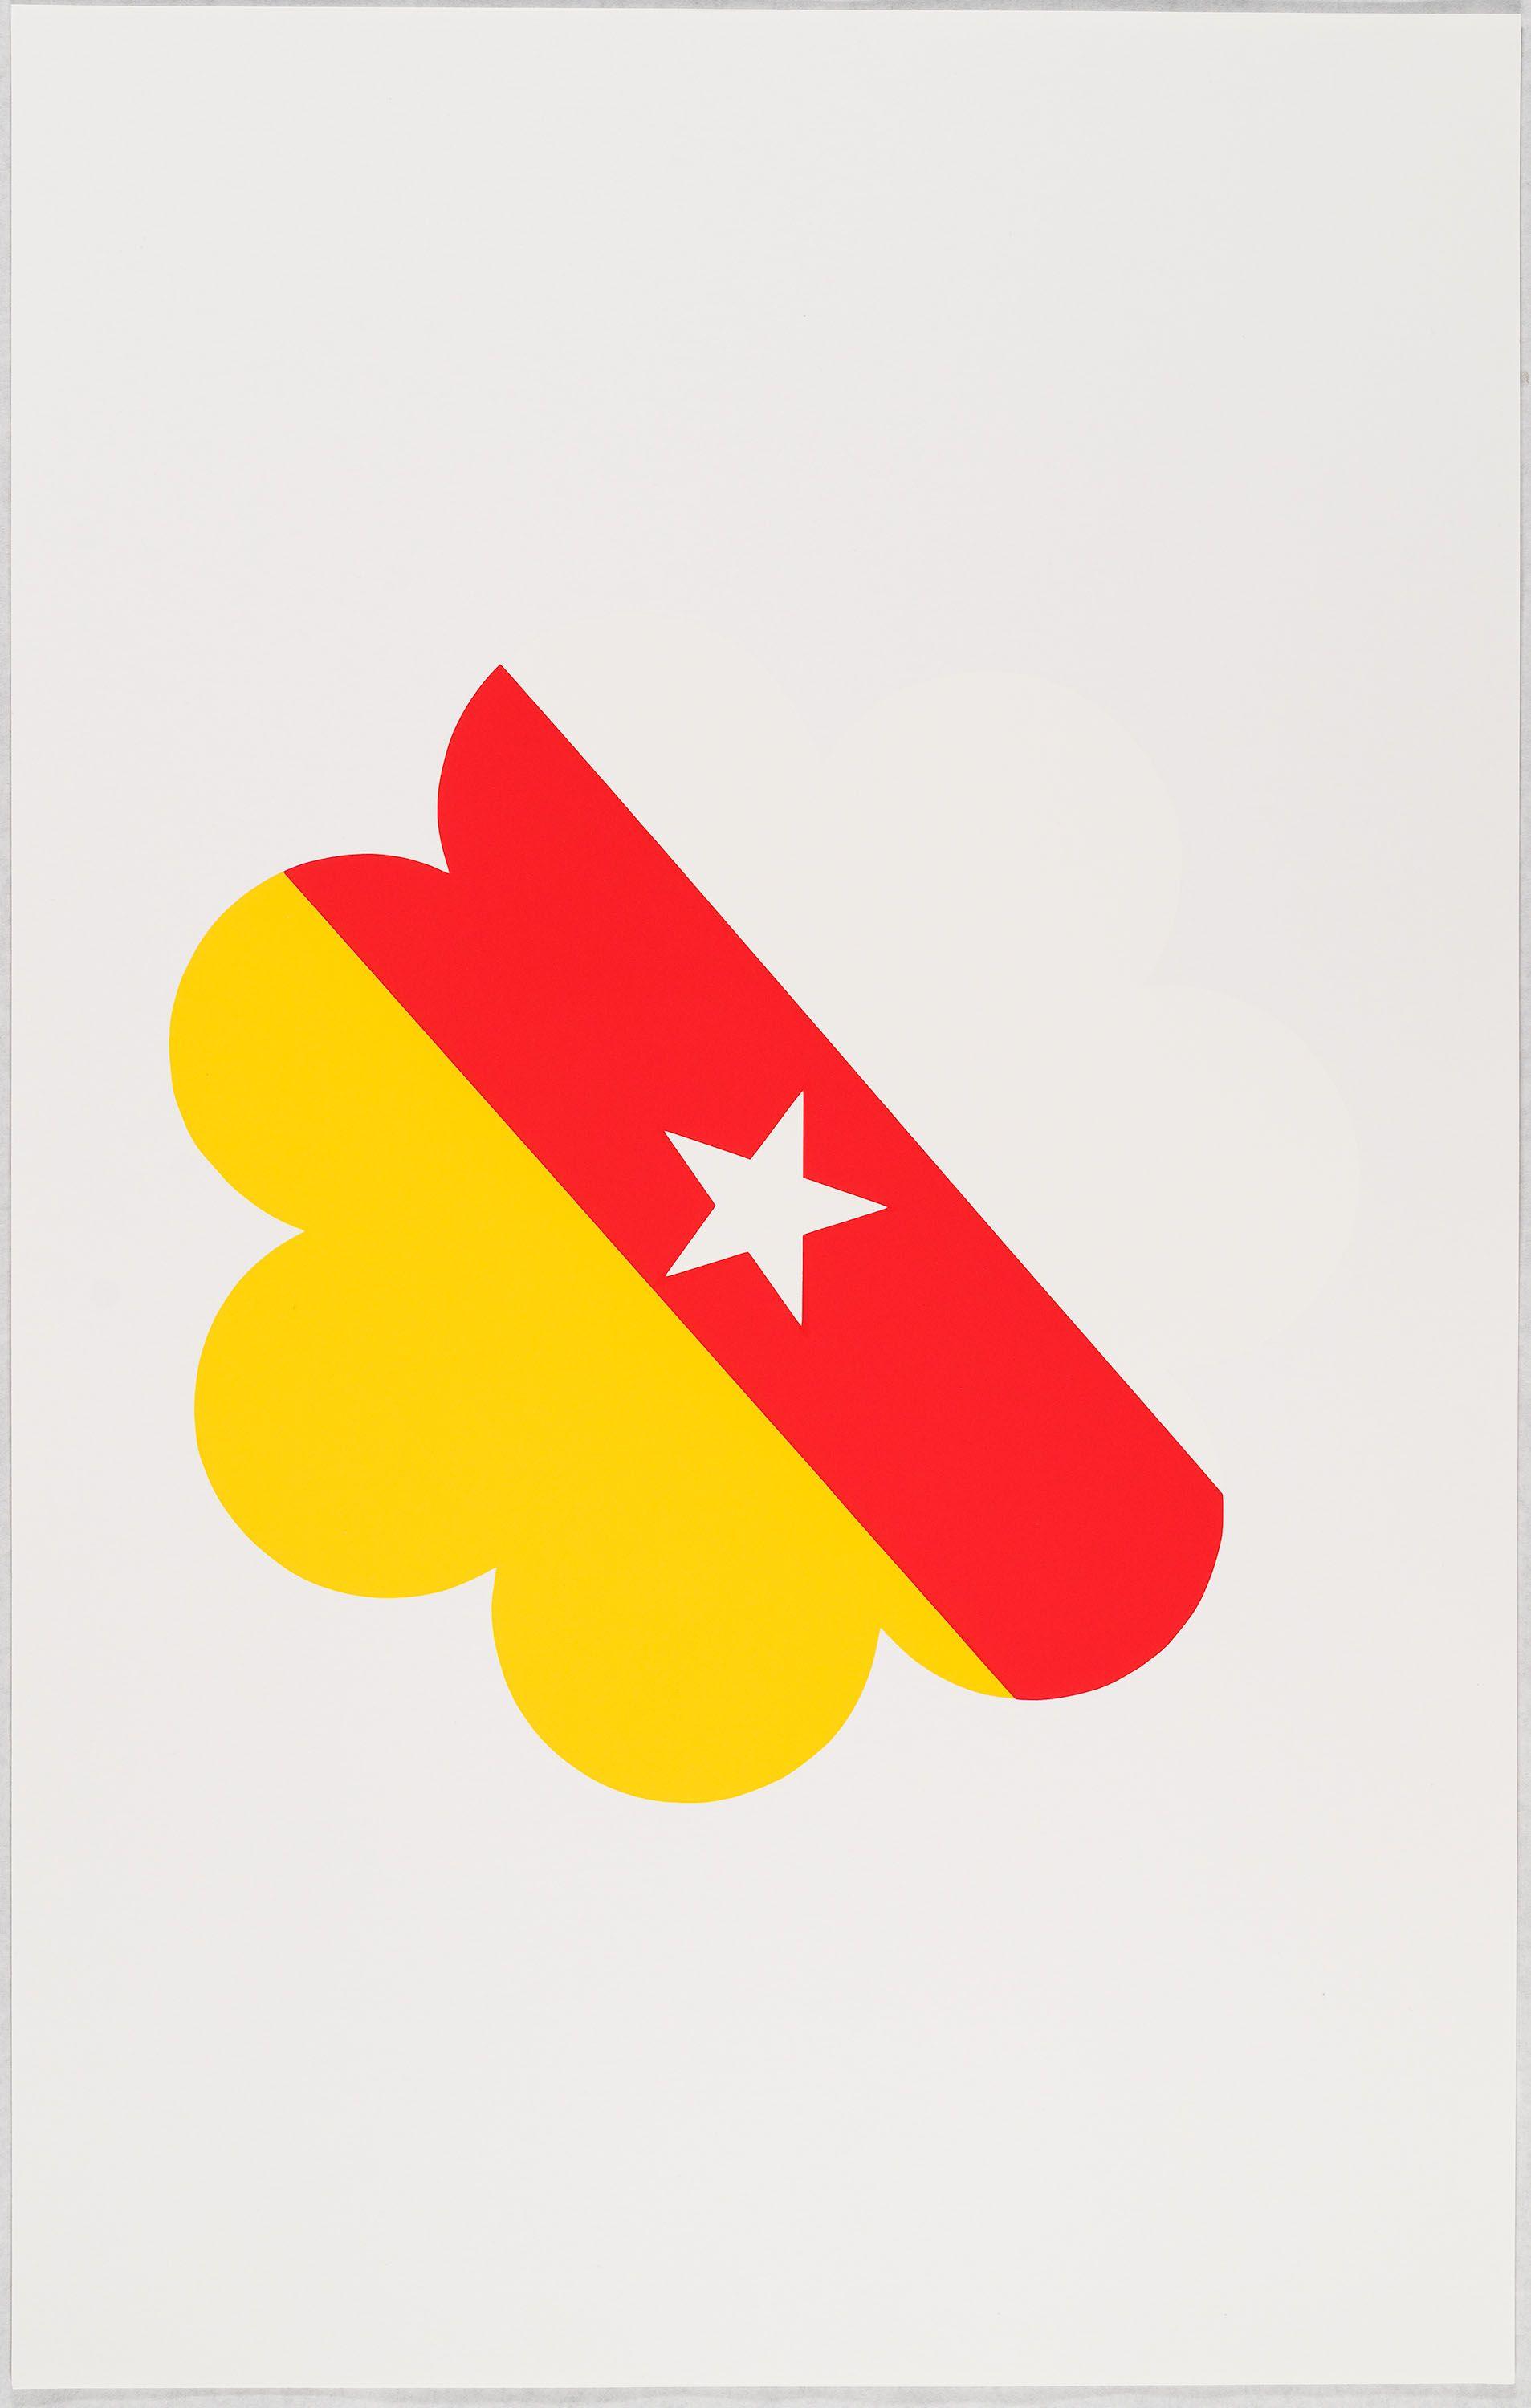 FNLA Logo - FNLA (Frente Nacional de Libertação para a Angola)